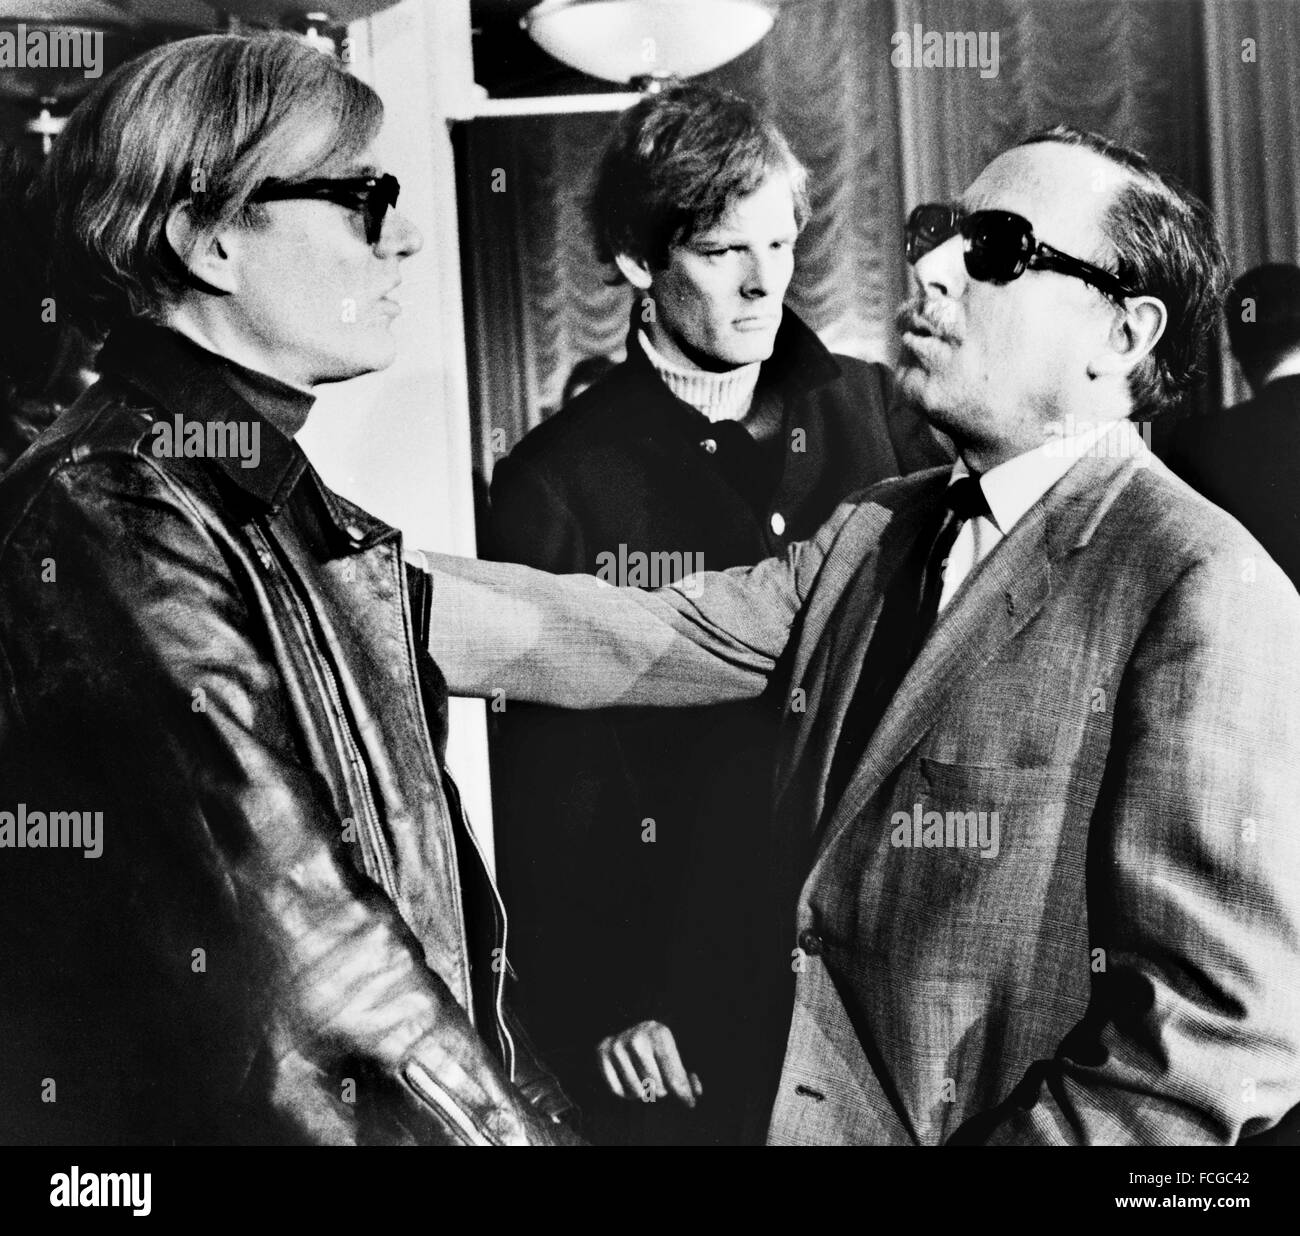 Artista Andy Warhol (sinistra) e il drammaturgo Tennessee Williams (a destra) con il regista Paul Morrissey in background), S.S. Francia, 1967 Foto Stock